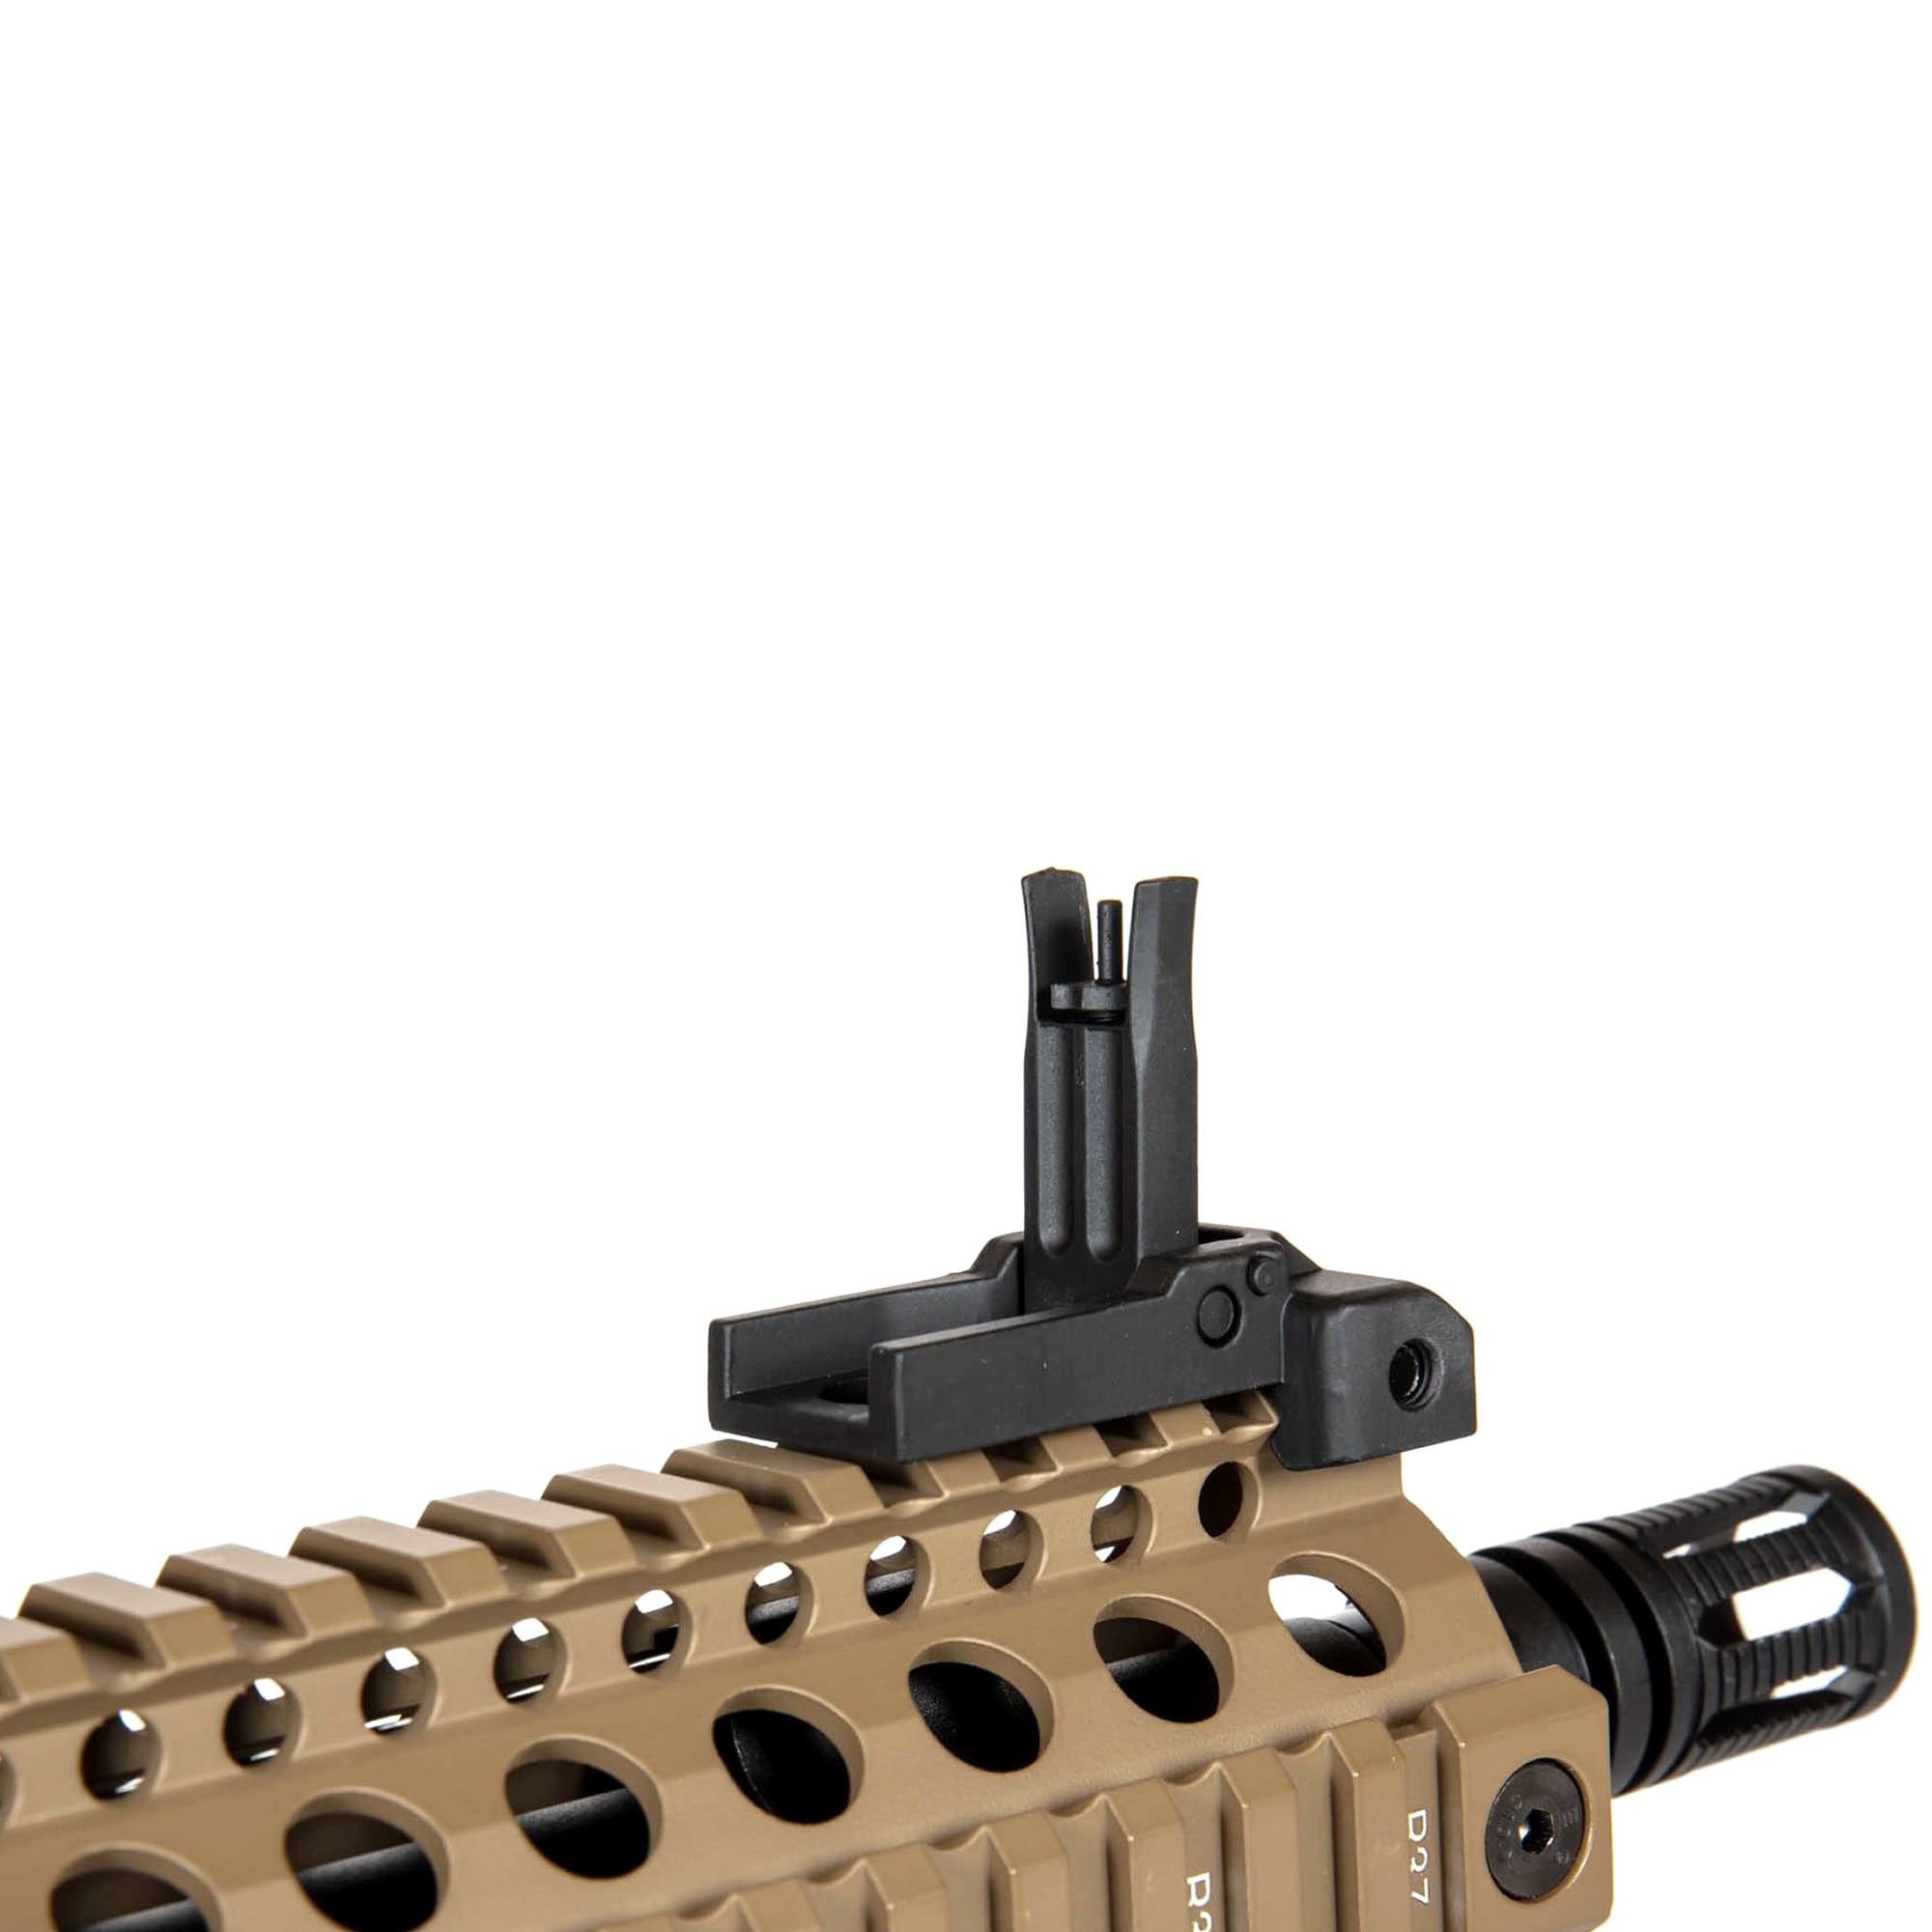 AEG Specna Arms SA-A03 SAEC System Assault Carbine - Half-Tan